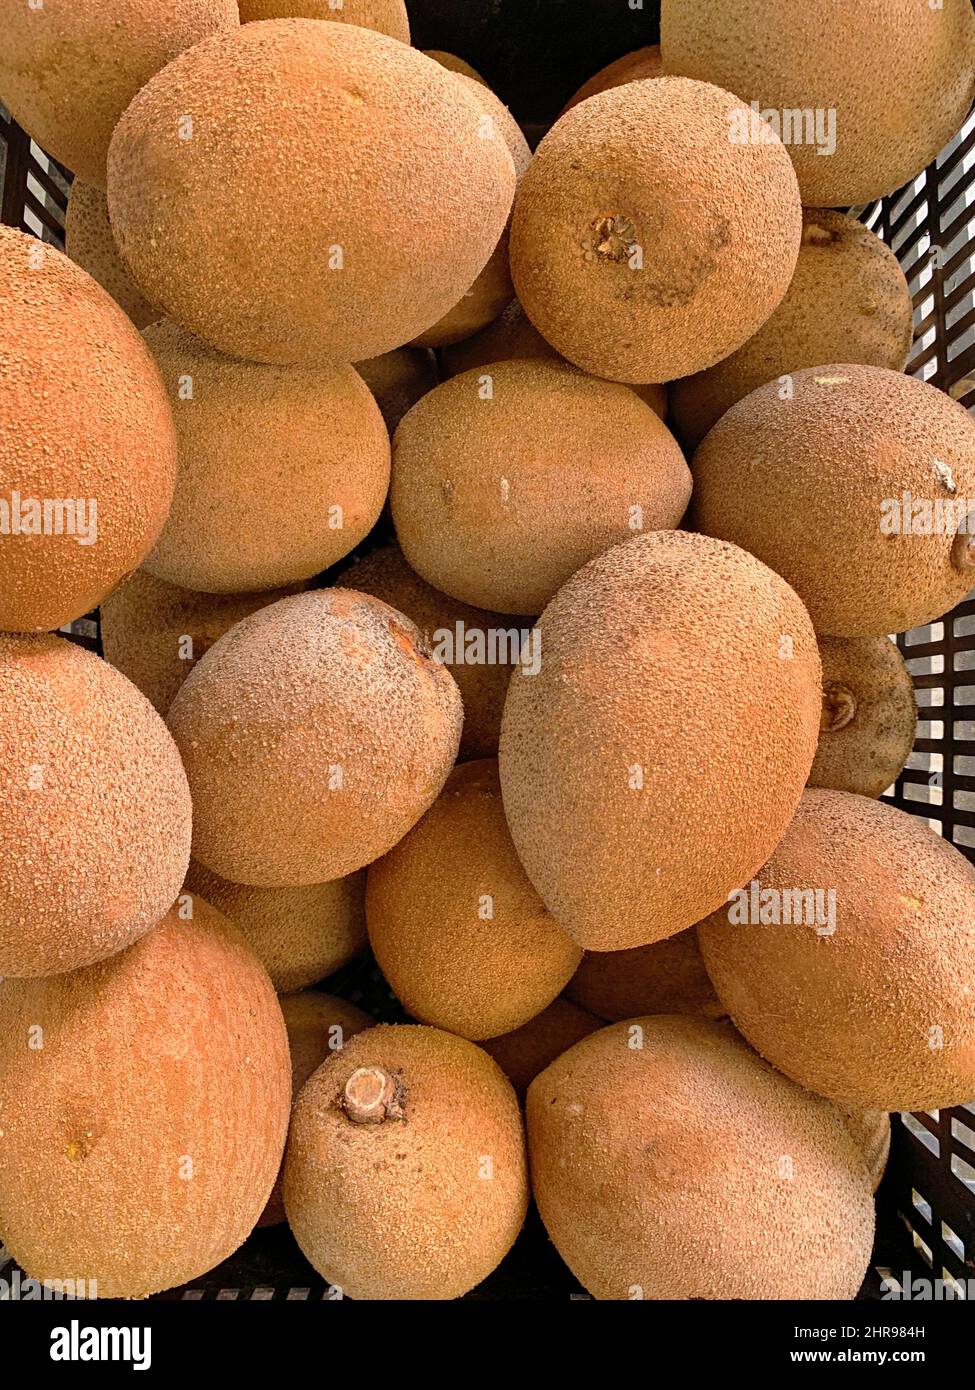 Colpo verticale di mele mamey fresche (Mammea americana) nel carrello in vendita Foto Stock